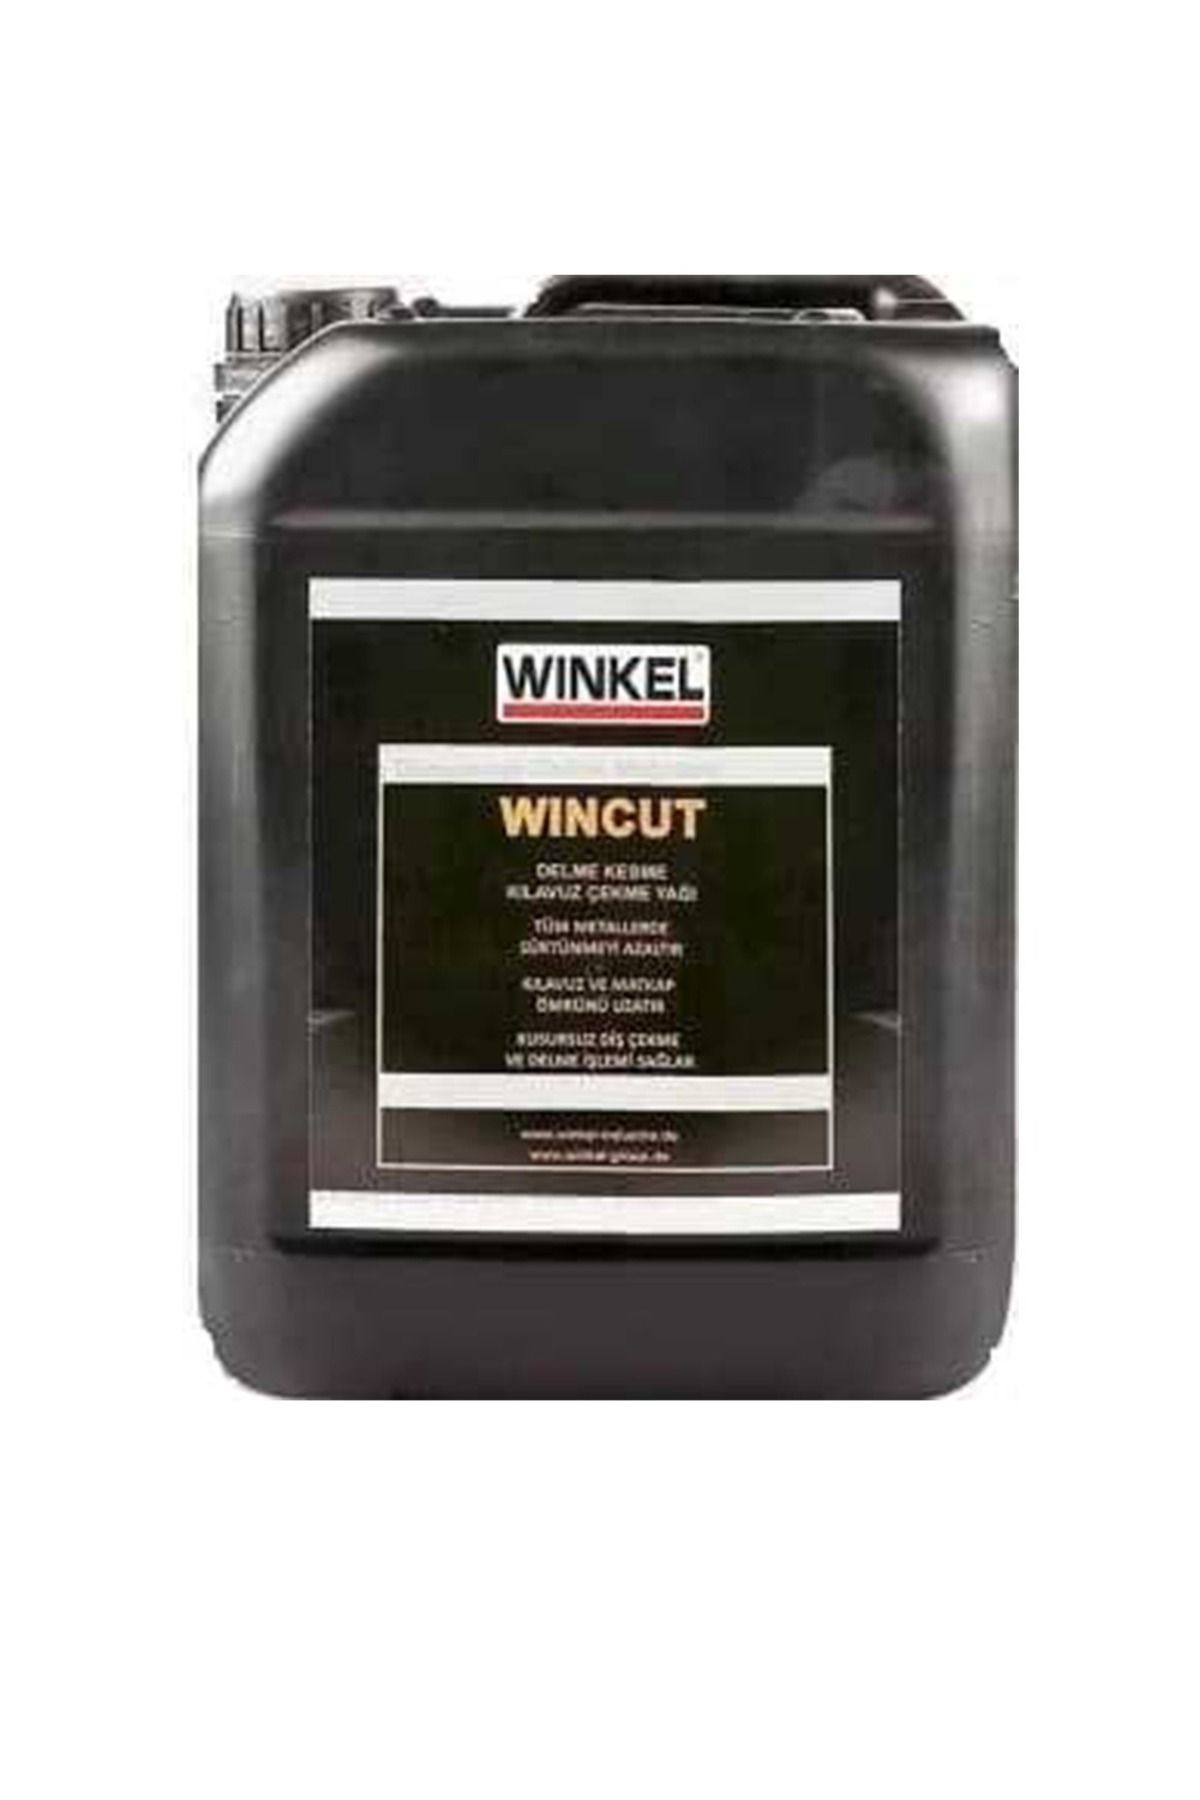 Winkel Wincut Delme Kesme Kılavuz Çekme Yağı 5 lt